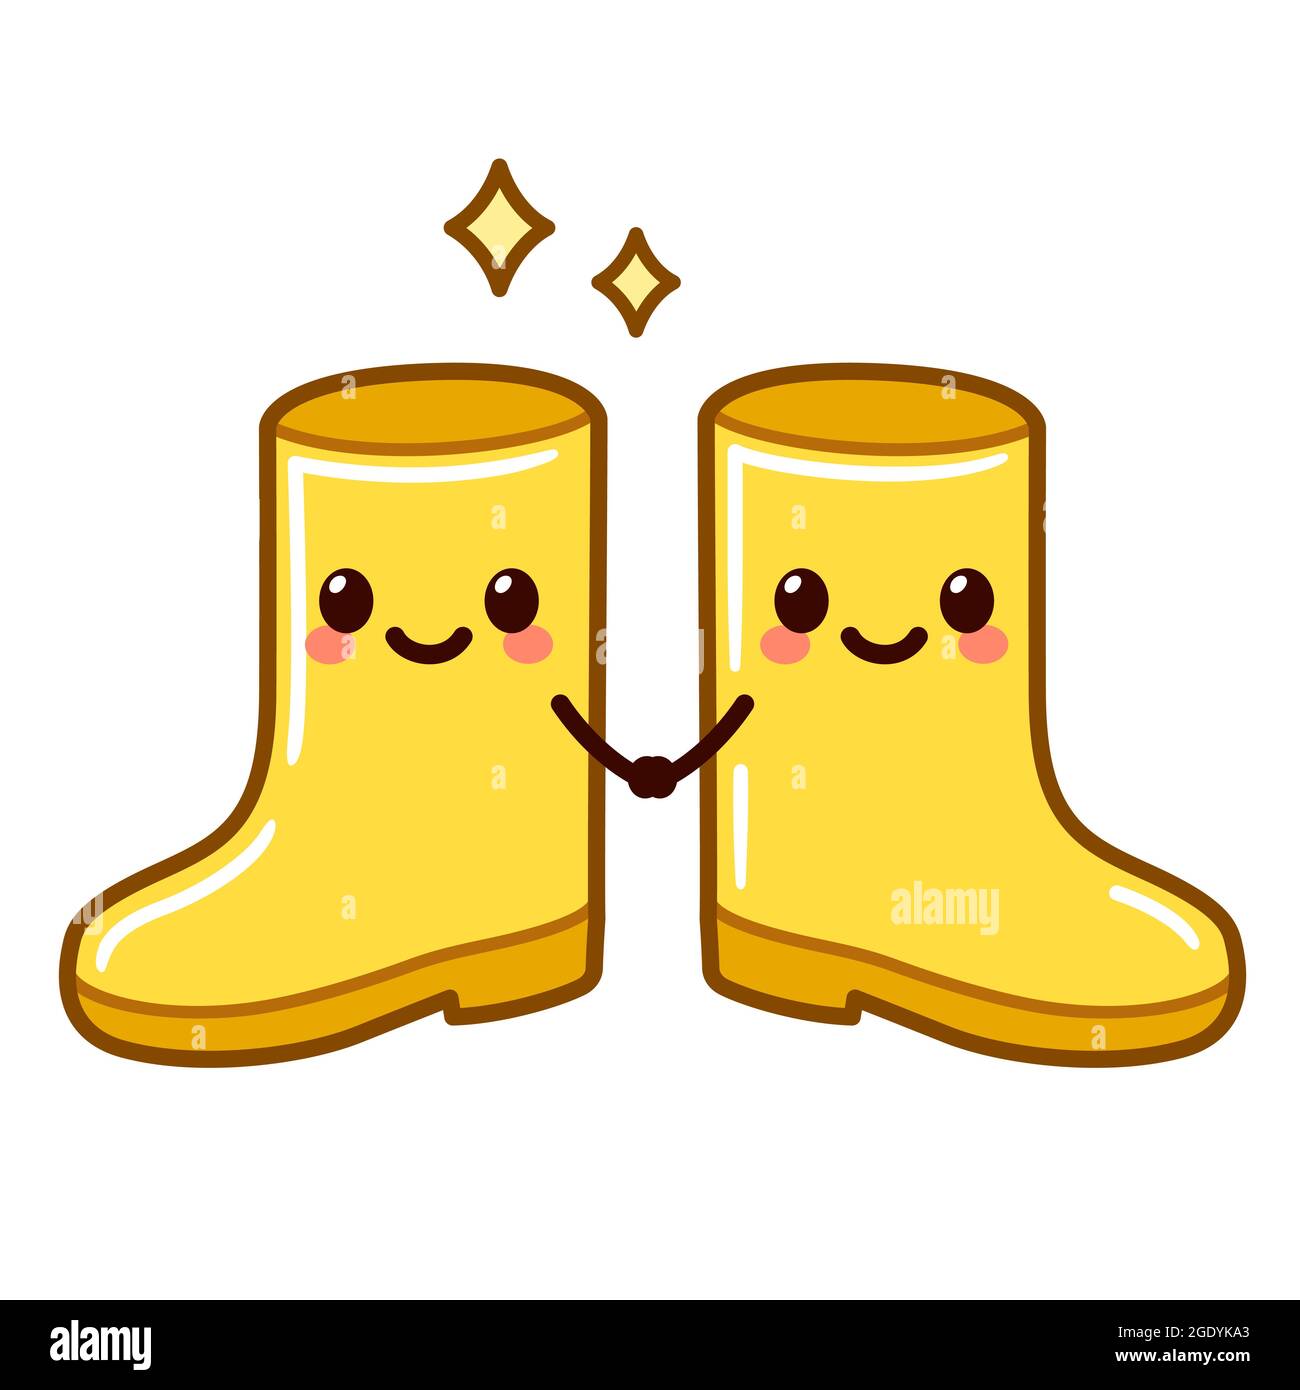 Zwei gelbe Regenstiefel mit niedlichen Gesichtern, die die Hände halten. Kawaii Gummi Boot paar, Vektor Clip Art Illustration. Stock Vektor